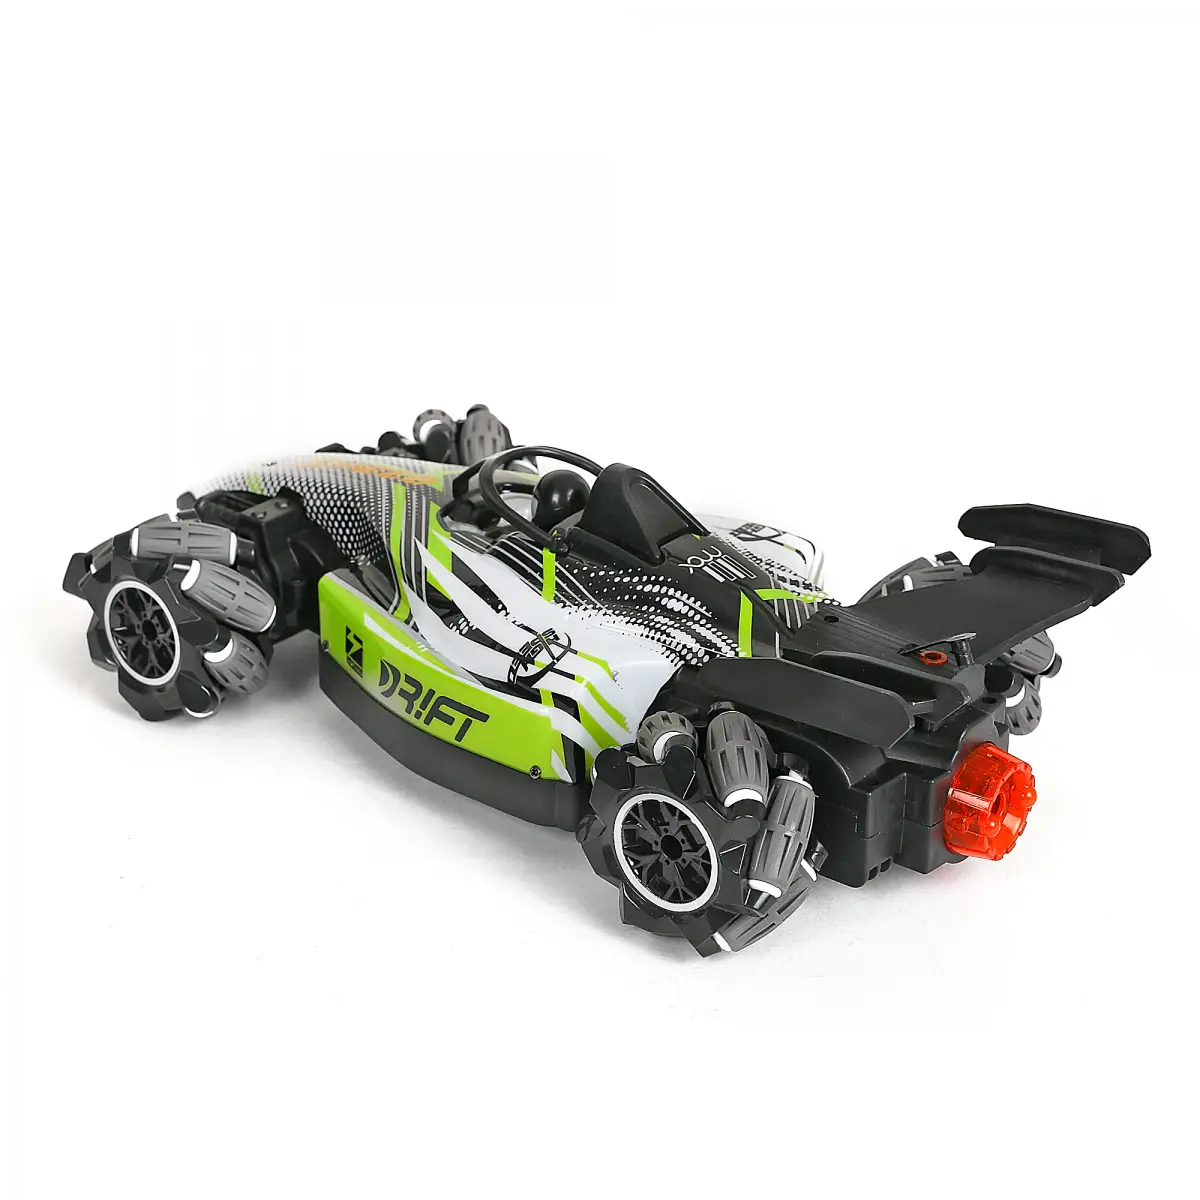 Ralleyz Formula Drift Car Remote Control Car for Kids, 6Y+, Green